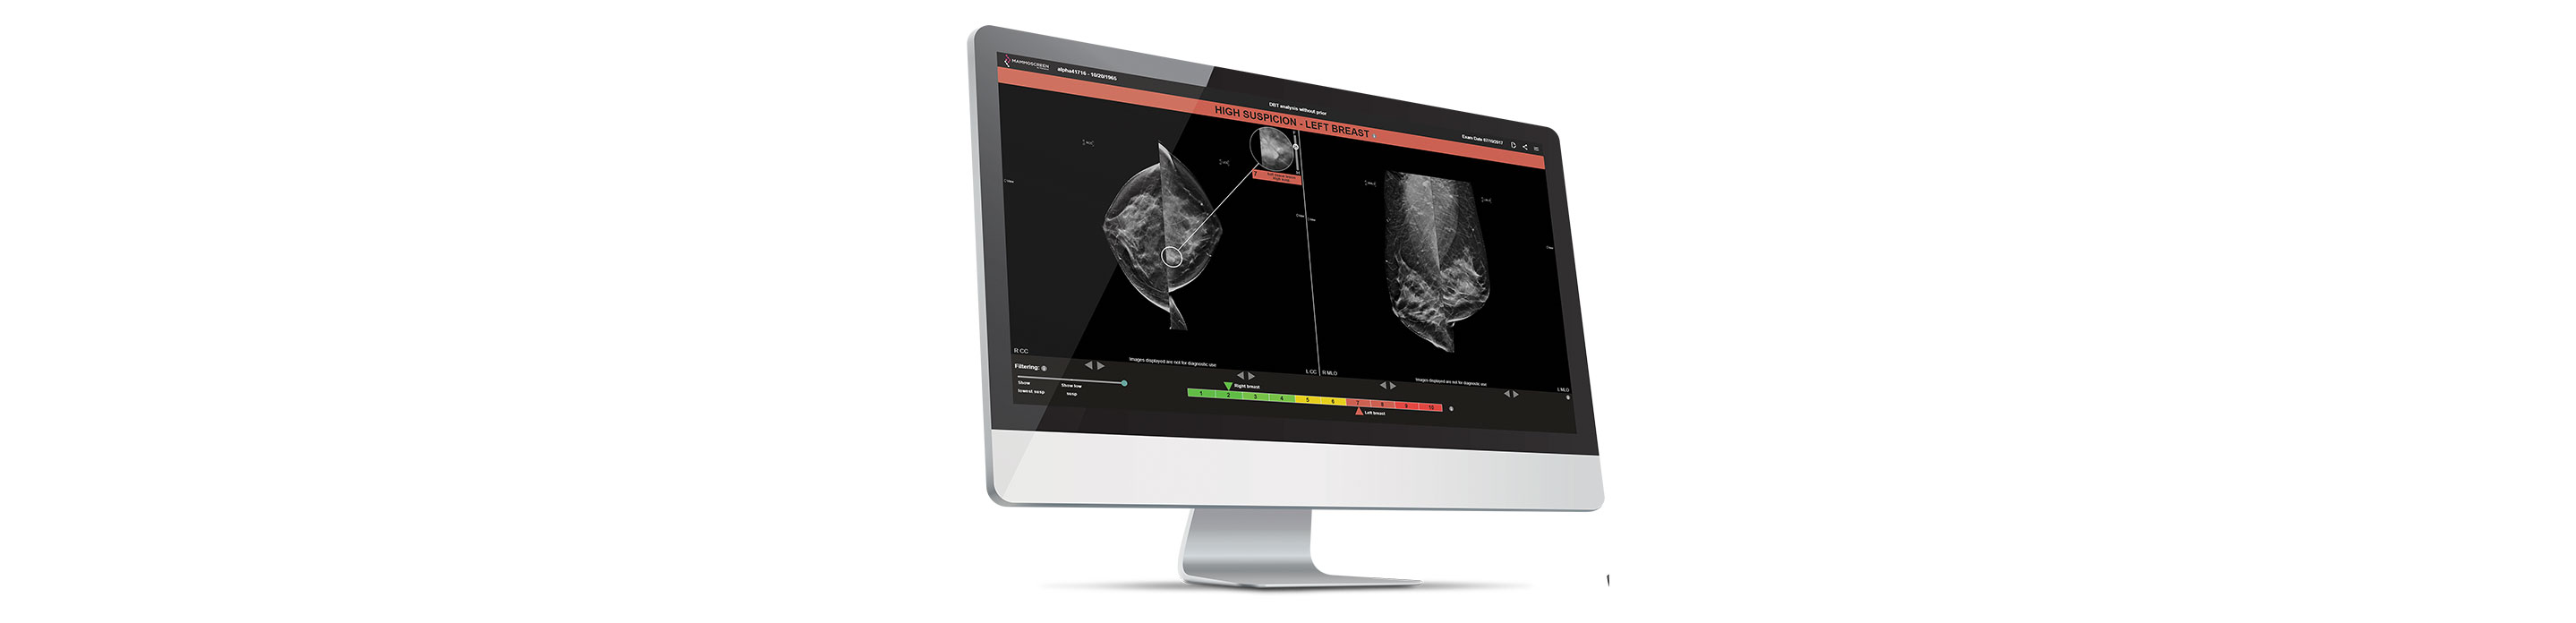 Visuel d'entête - Mammographie